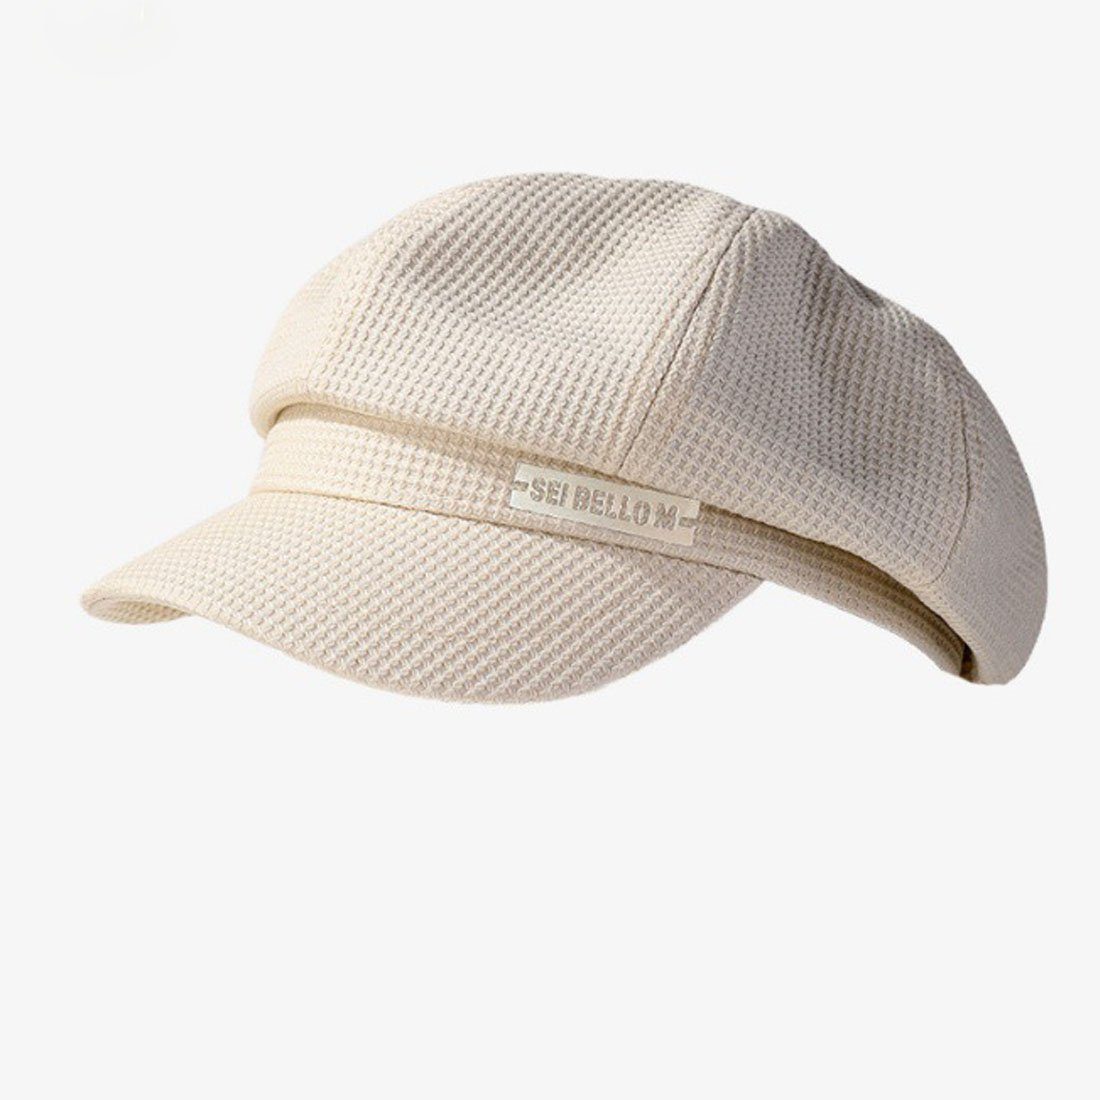 Beret, Hut, Plaid Baskenmütze britischen Damen DÖRÖY lässige achteckigen Hut Mode Weiß Retro